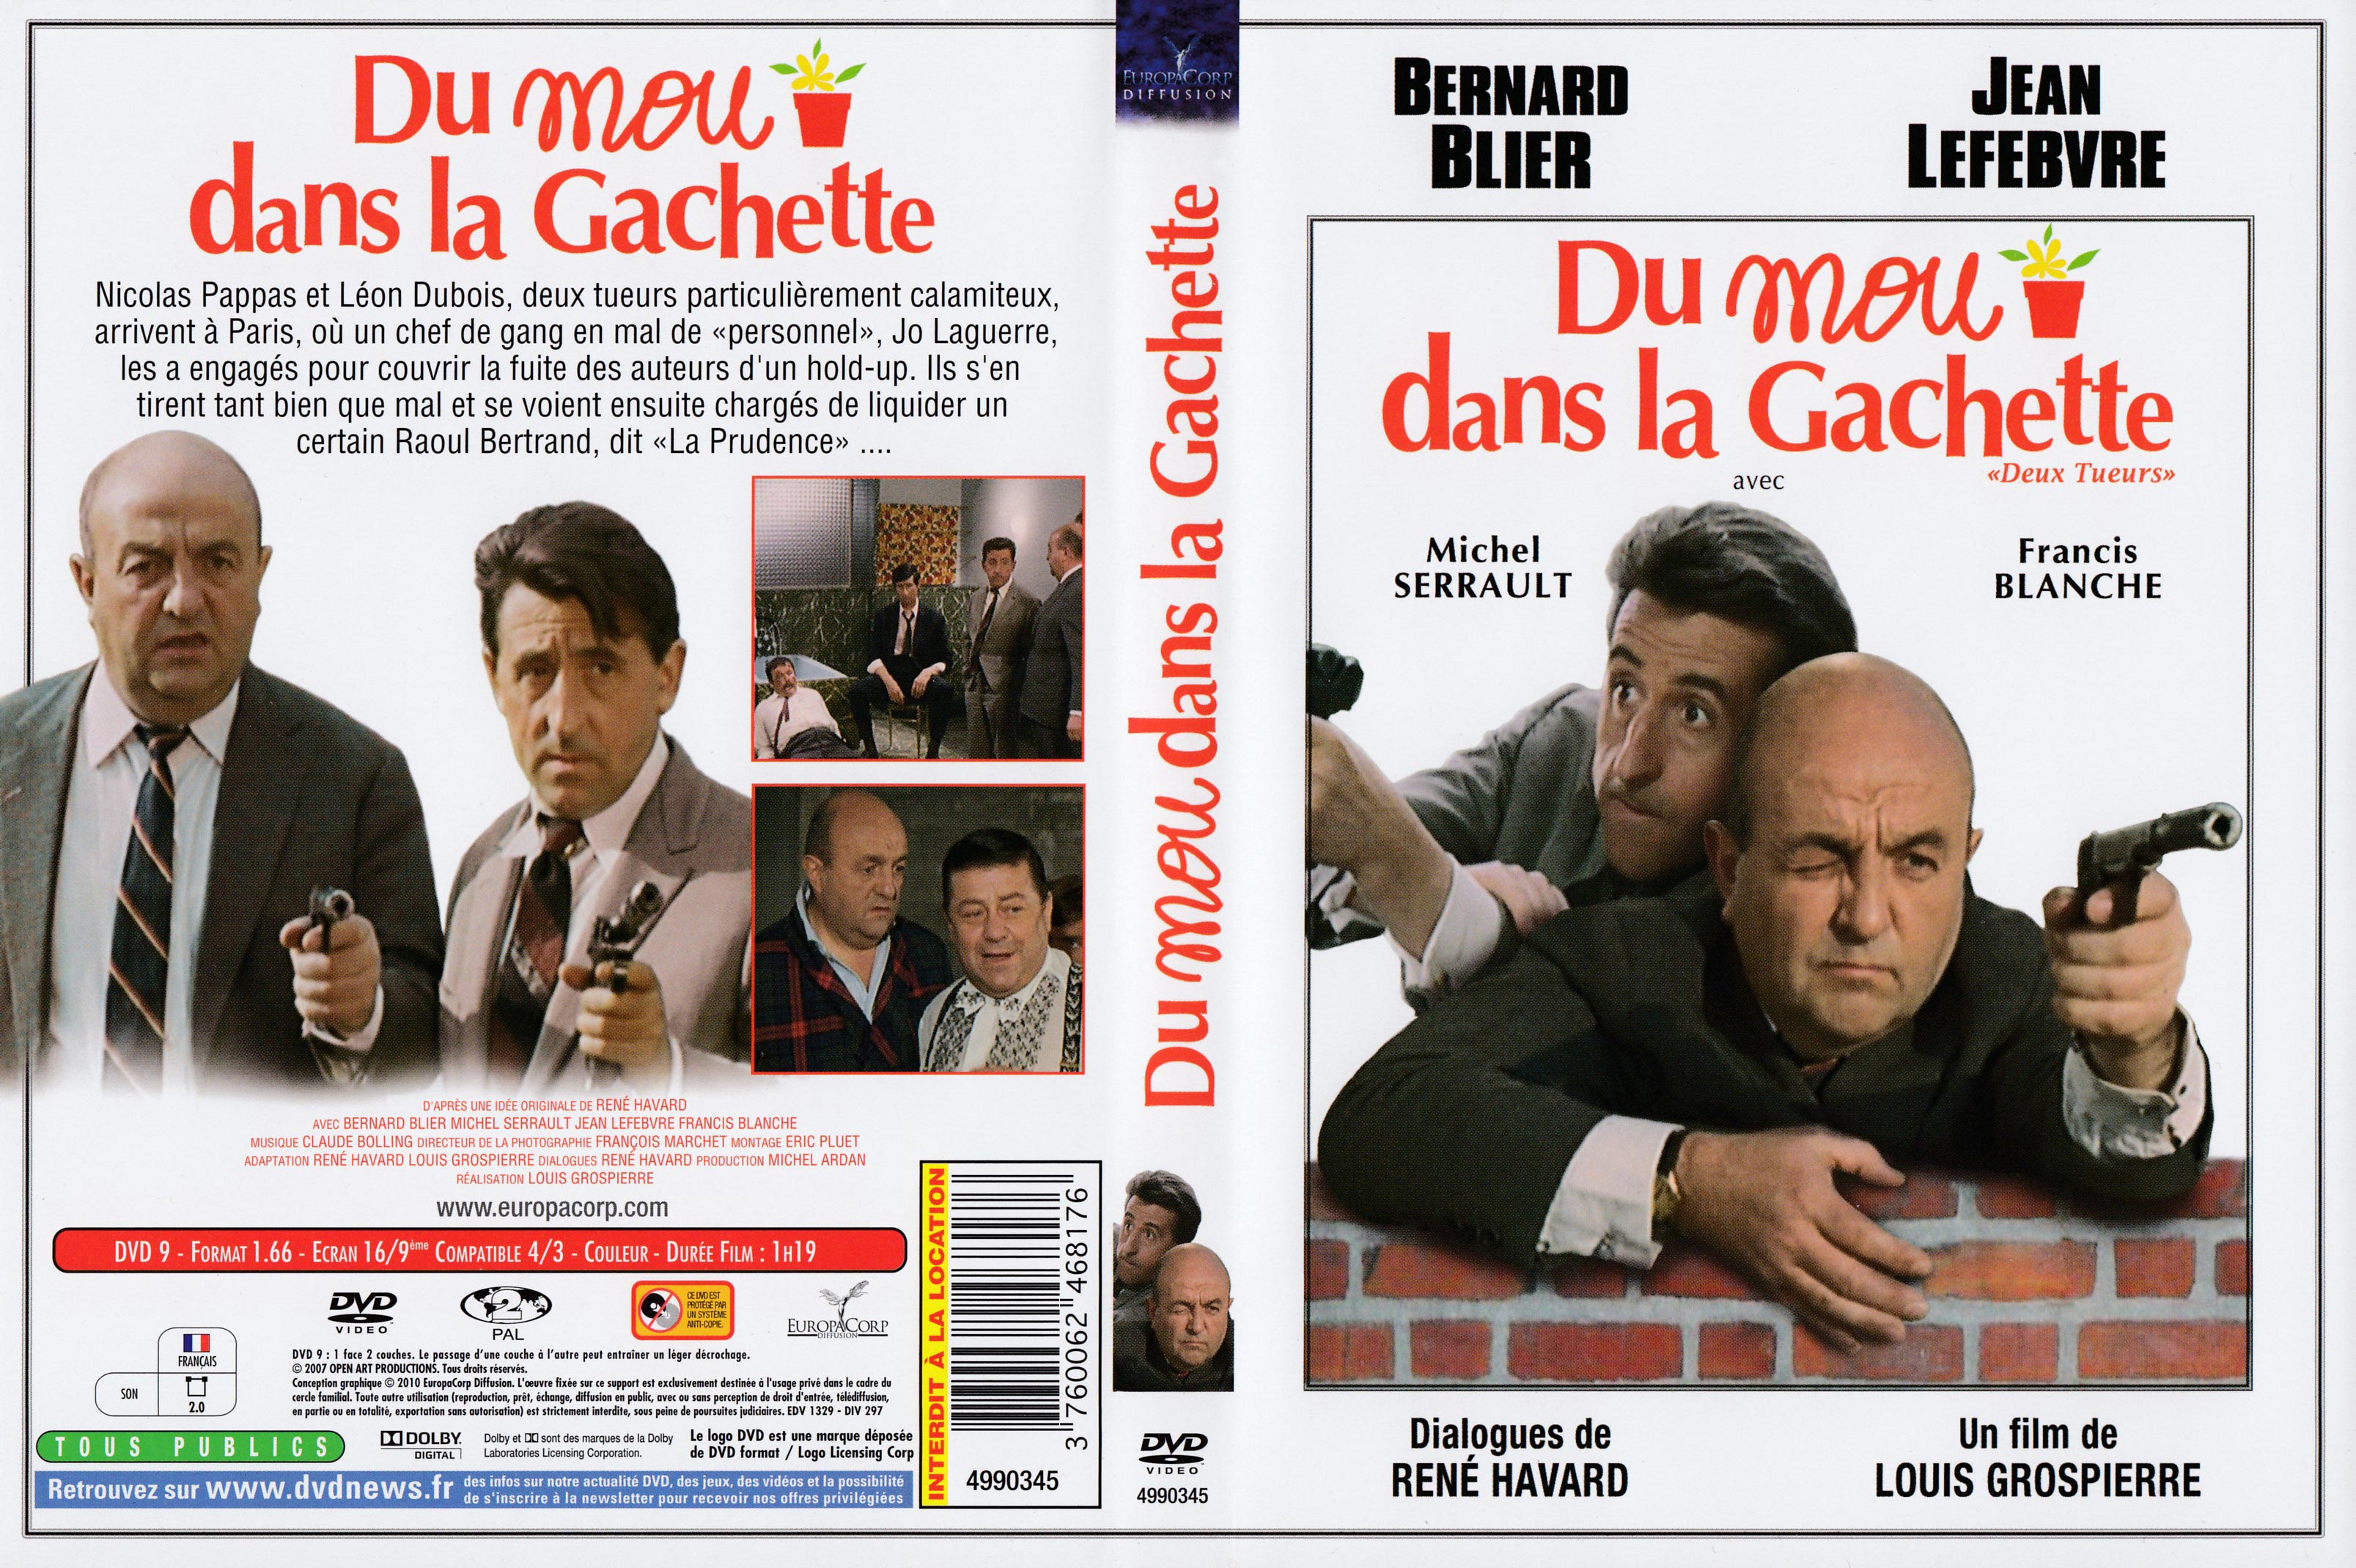 Jaquette DVD Du mou dans la gachette v3